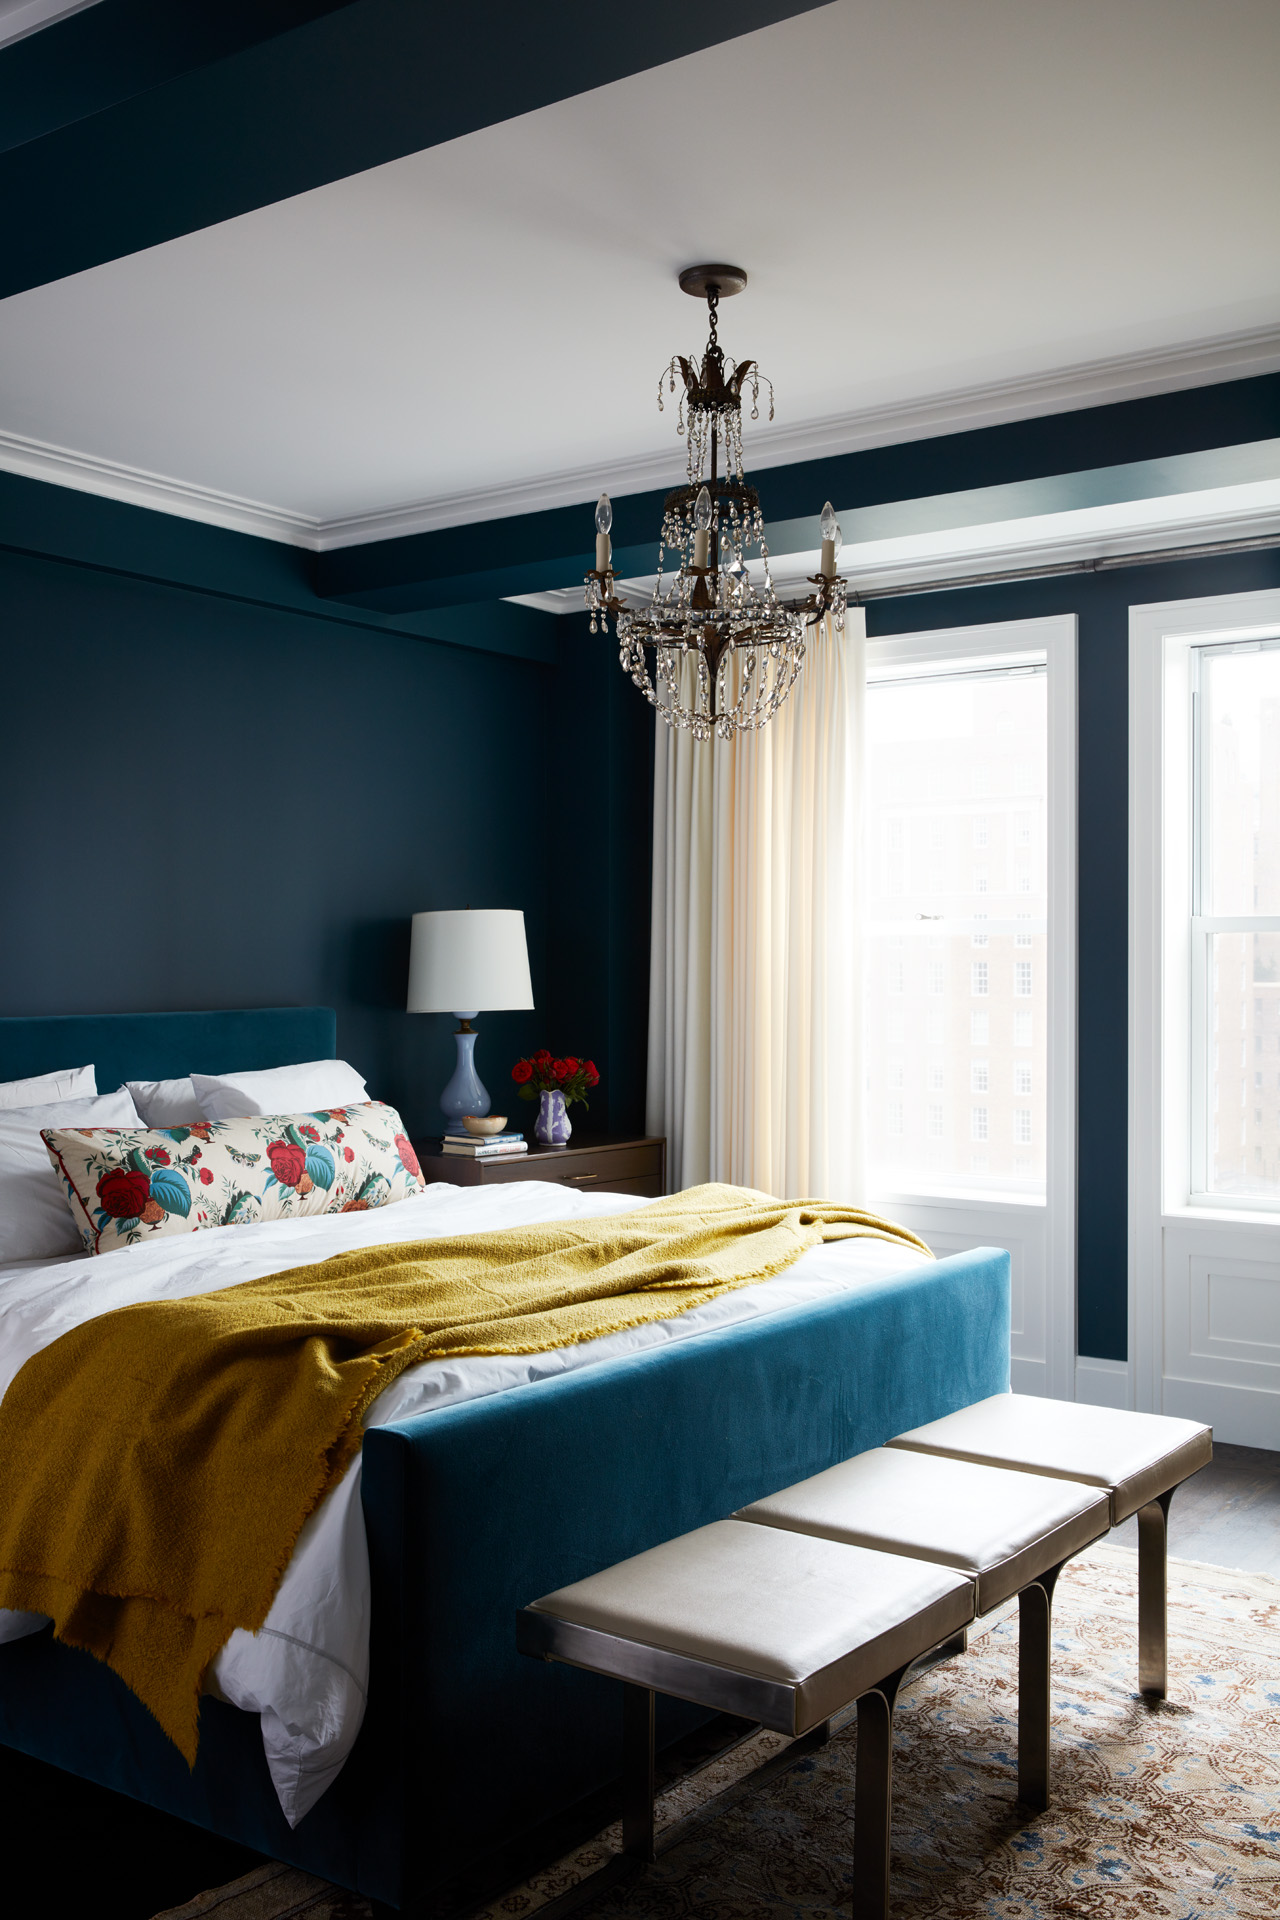 Sức lôi cuốn khó lòng chối từ những căn phòng ngủ mang sắc xanh biển cả - Ảnh 22.